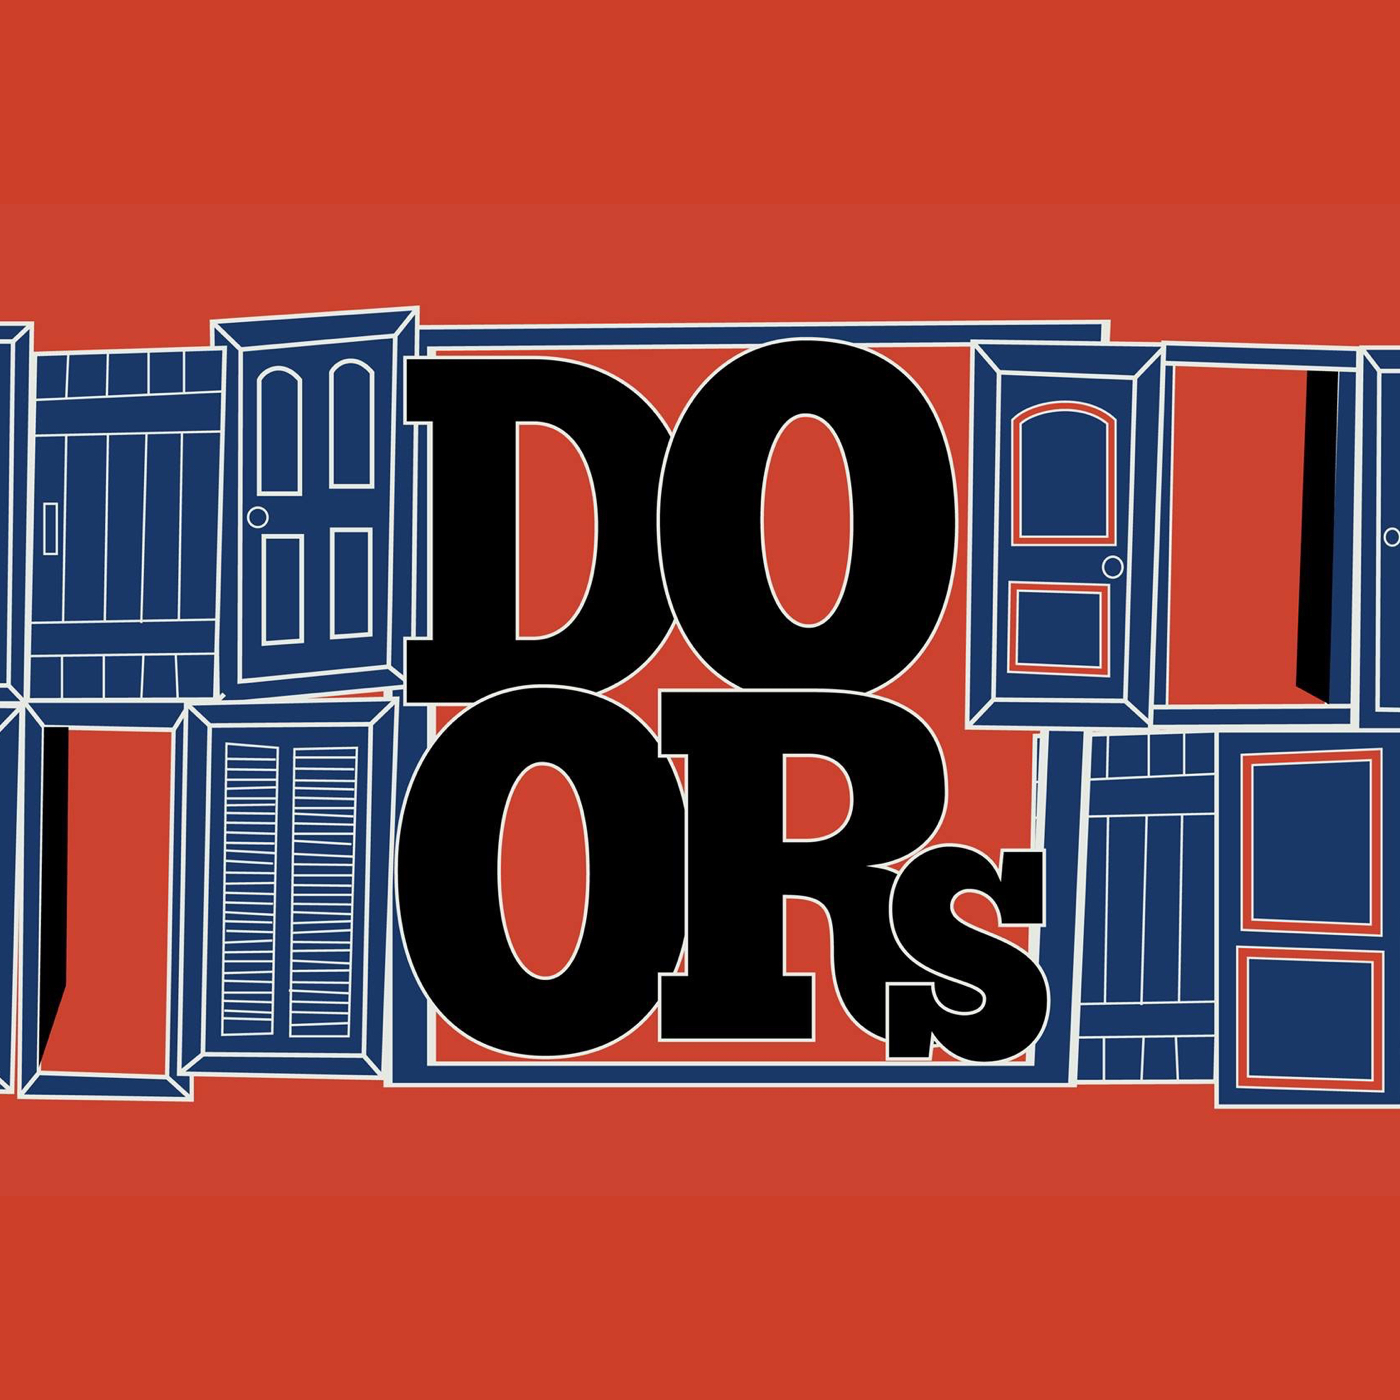 Doors Series- Open Door Policy